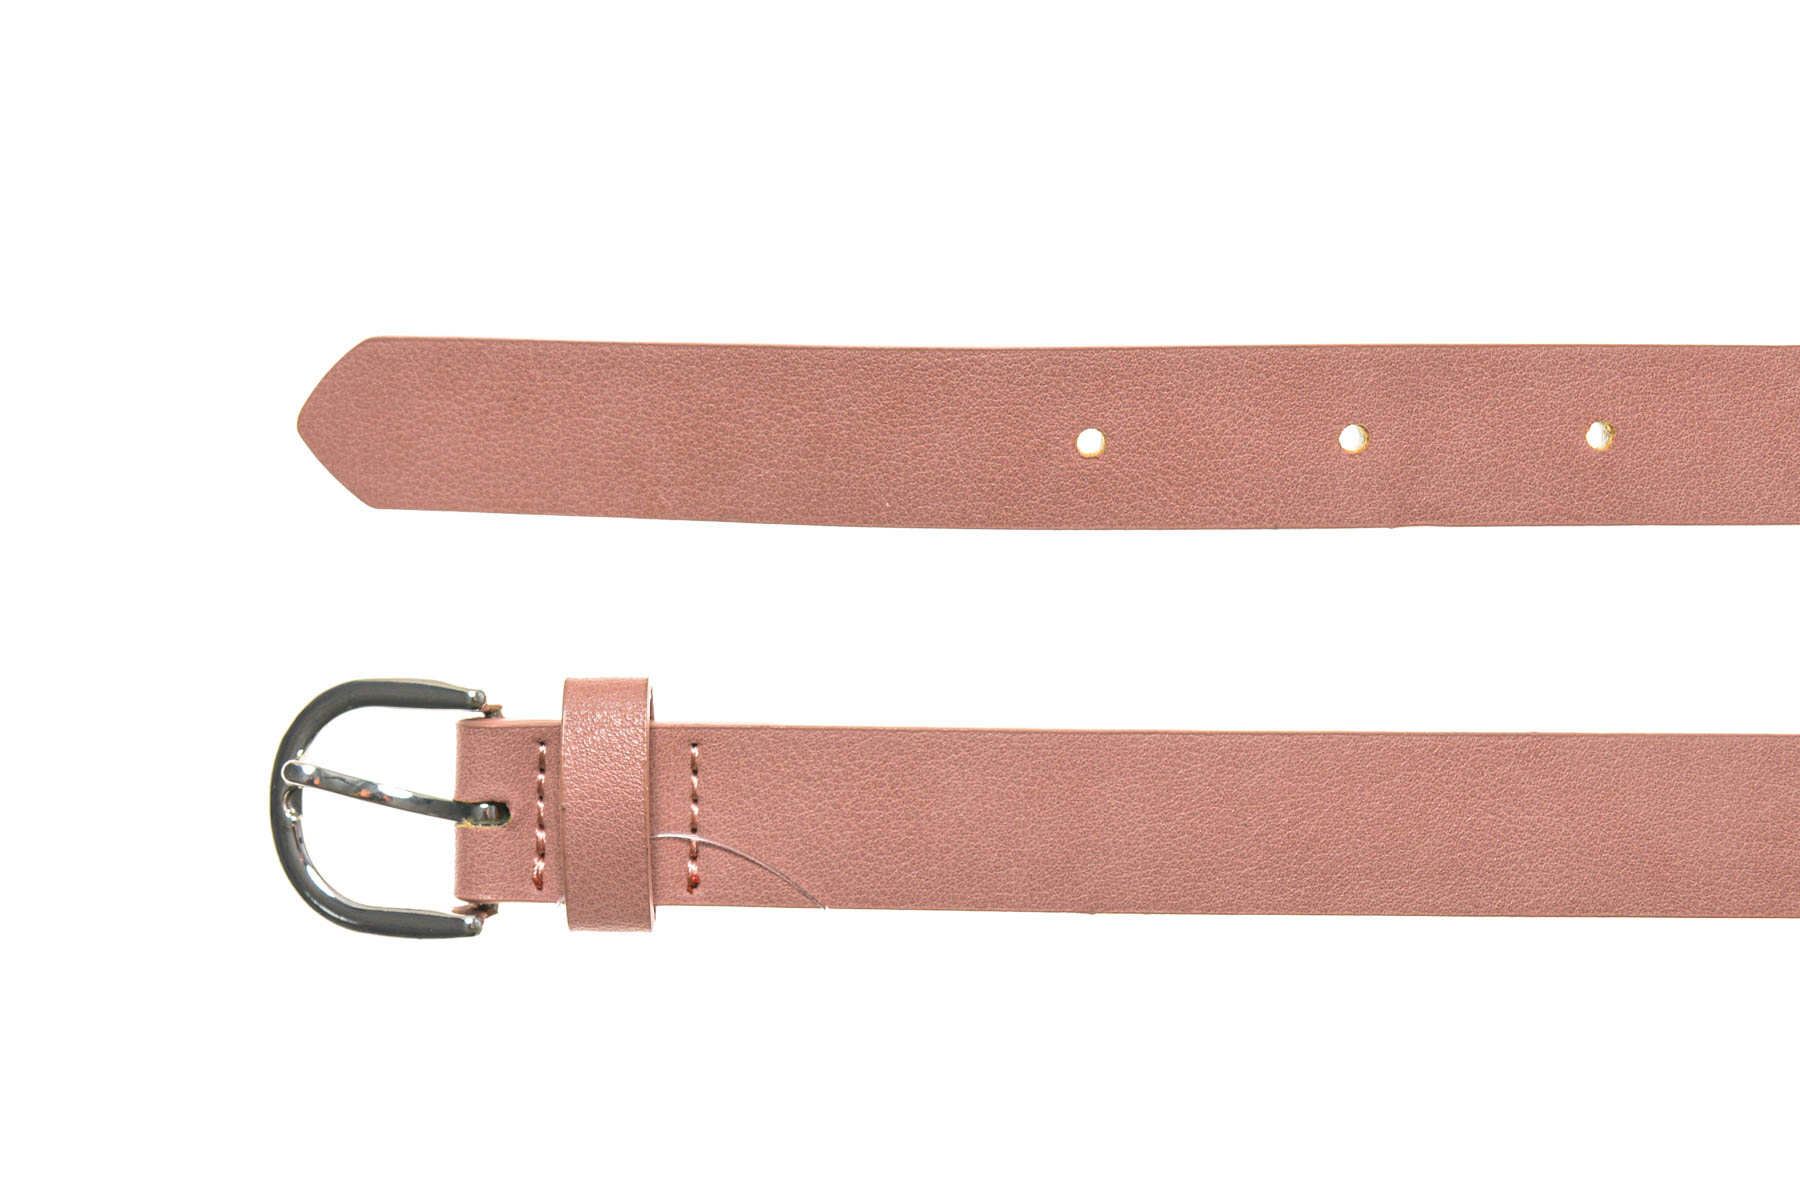 Ladies's belt - 2